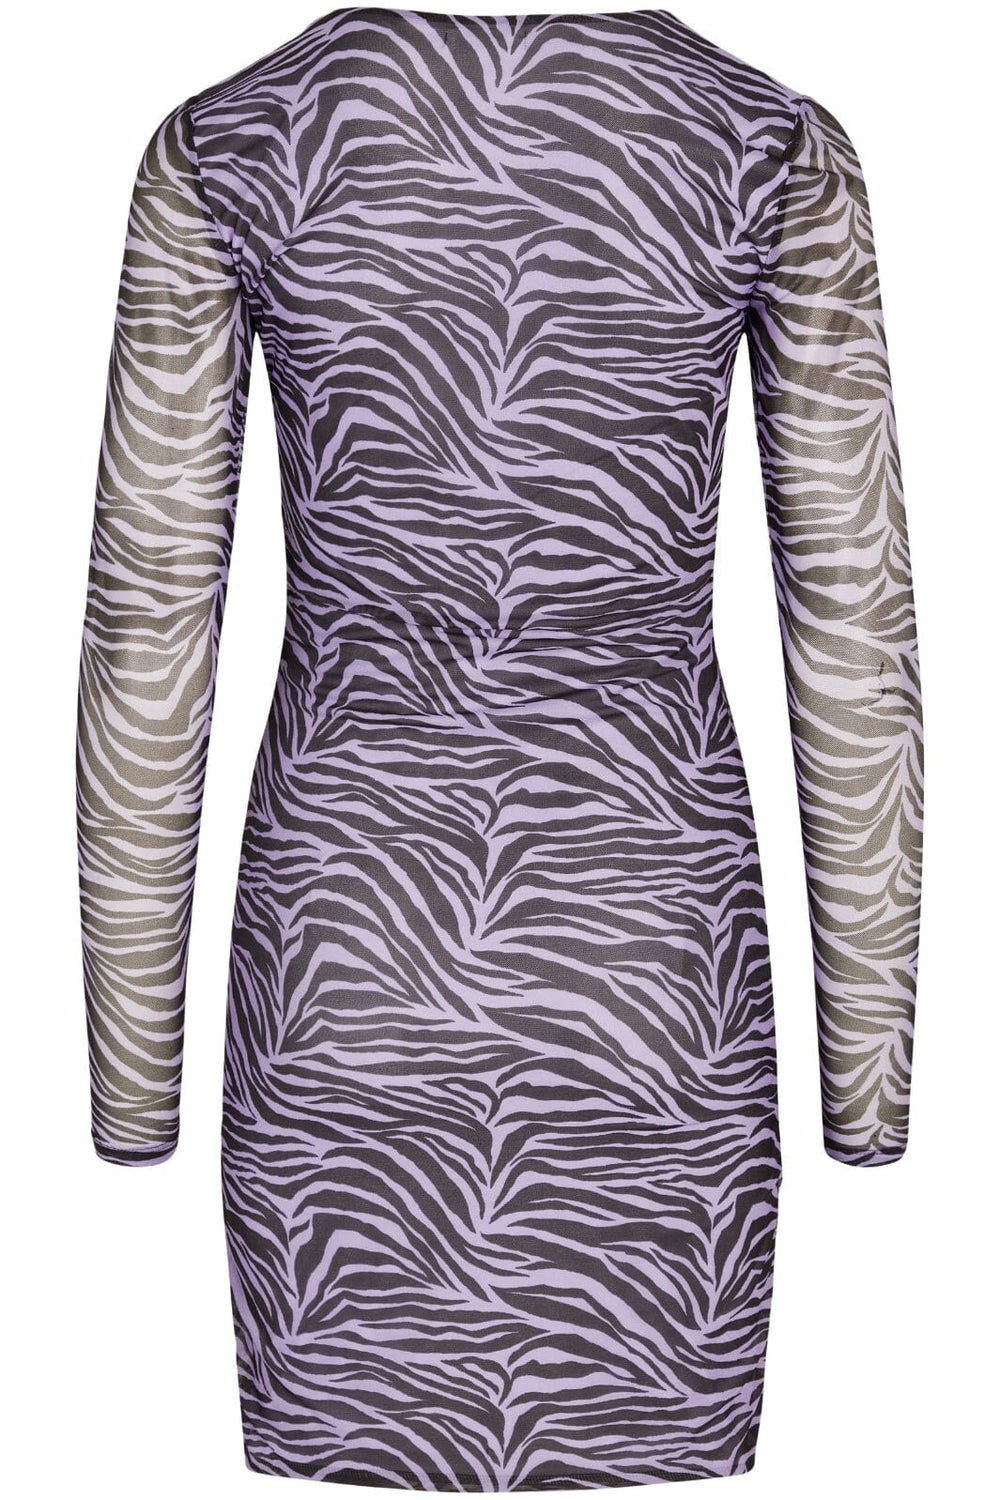 BZR - Mela Draw dress - Lavender Kjoler 